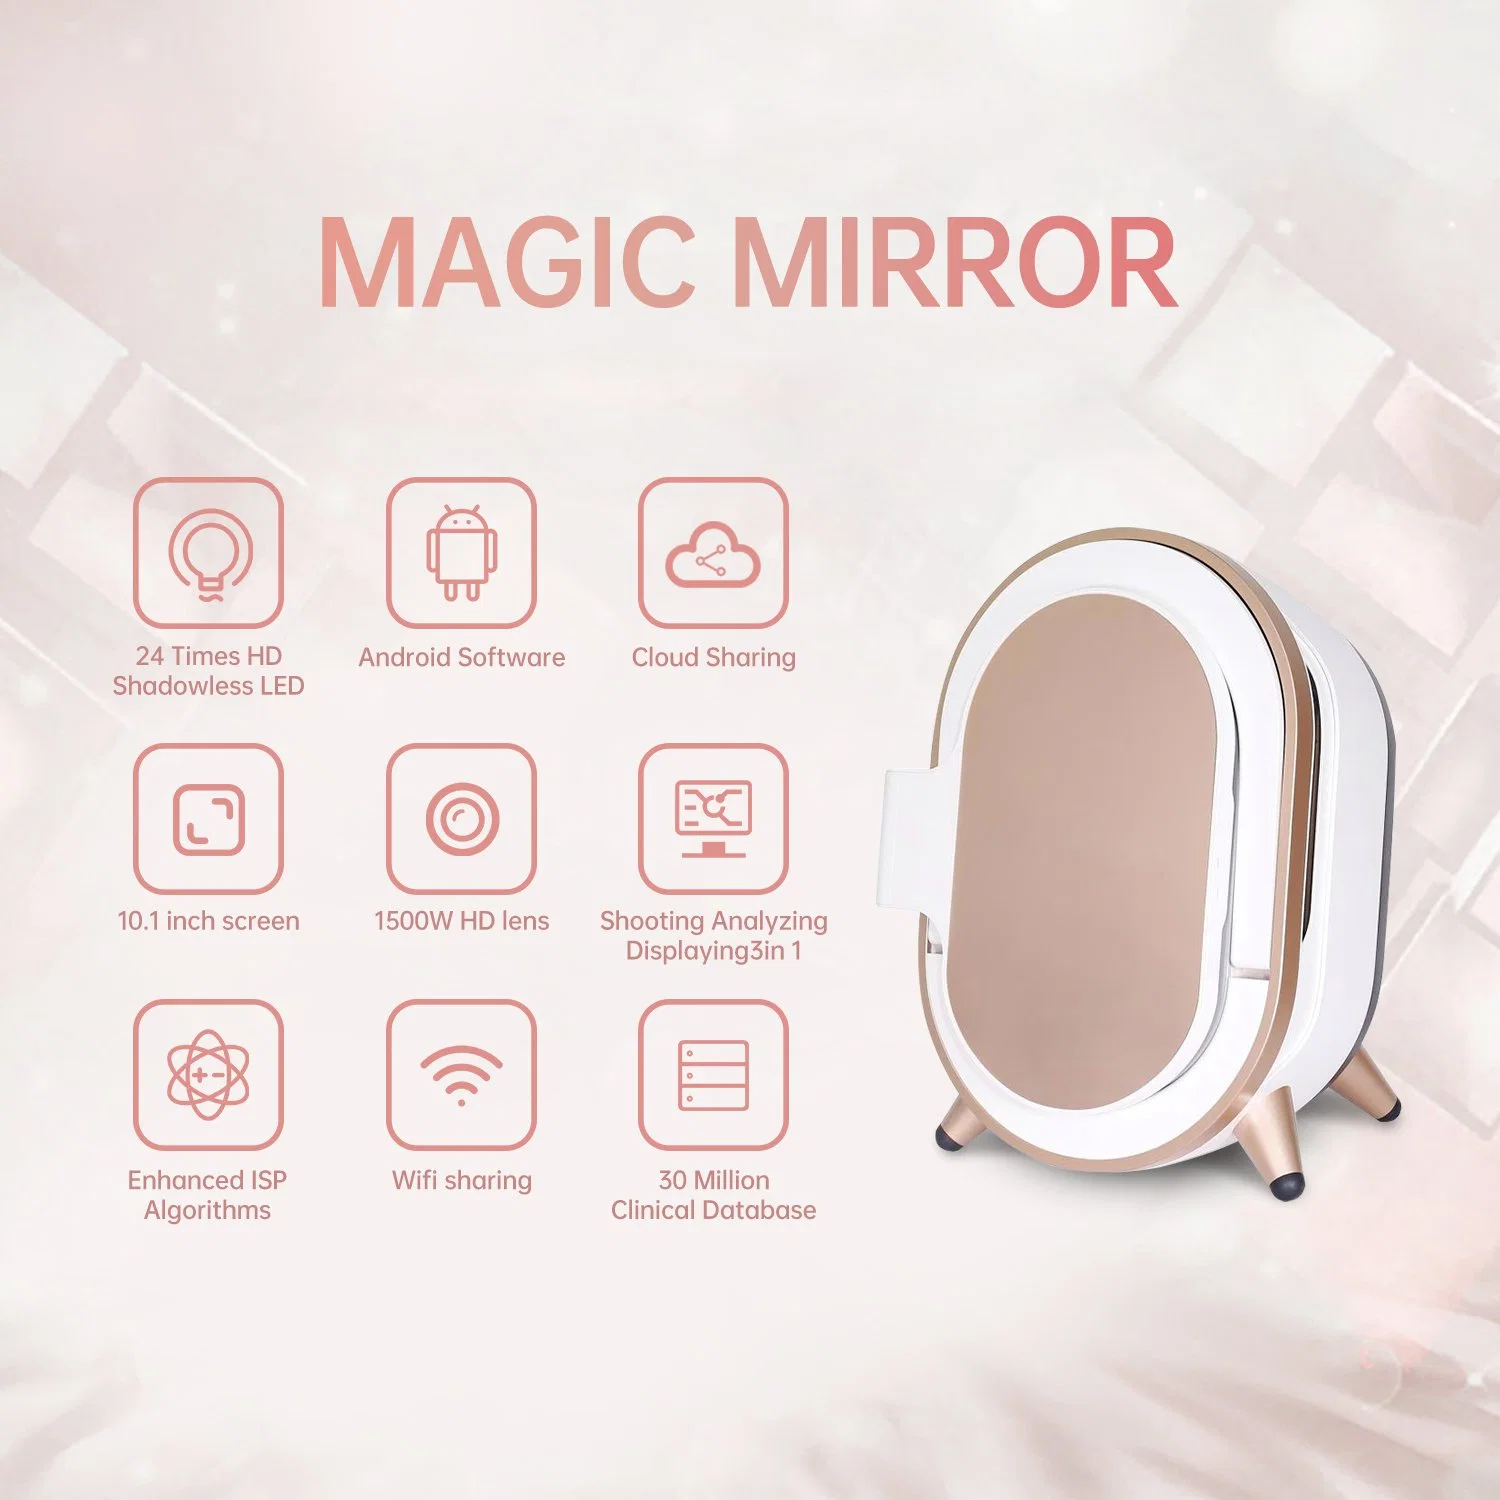 Analyseur de peau matériel Magic Mirror analyseur de visage matériel de beauté